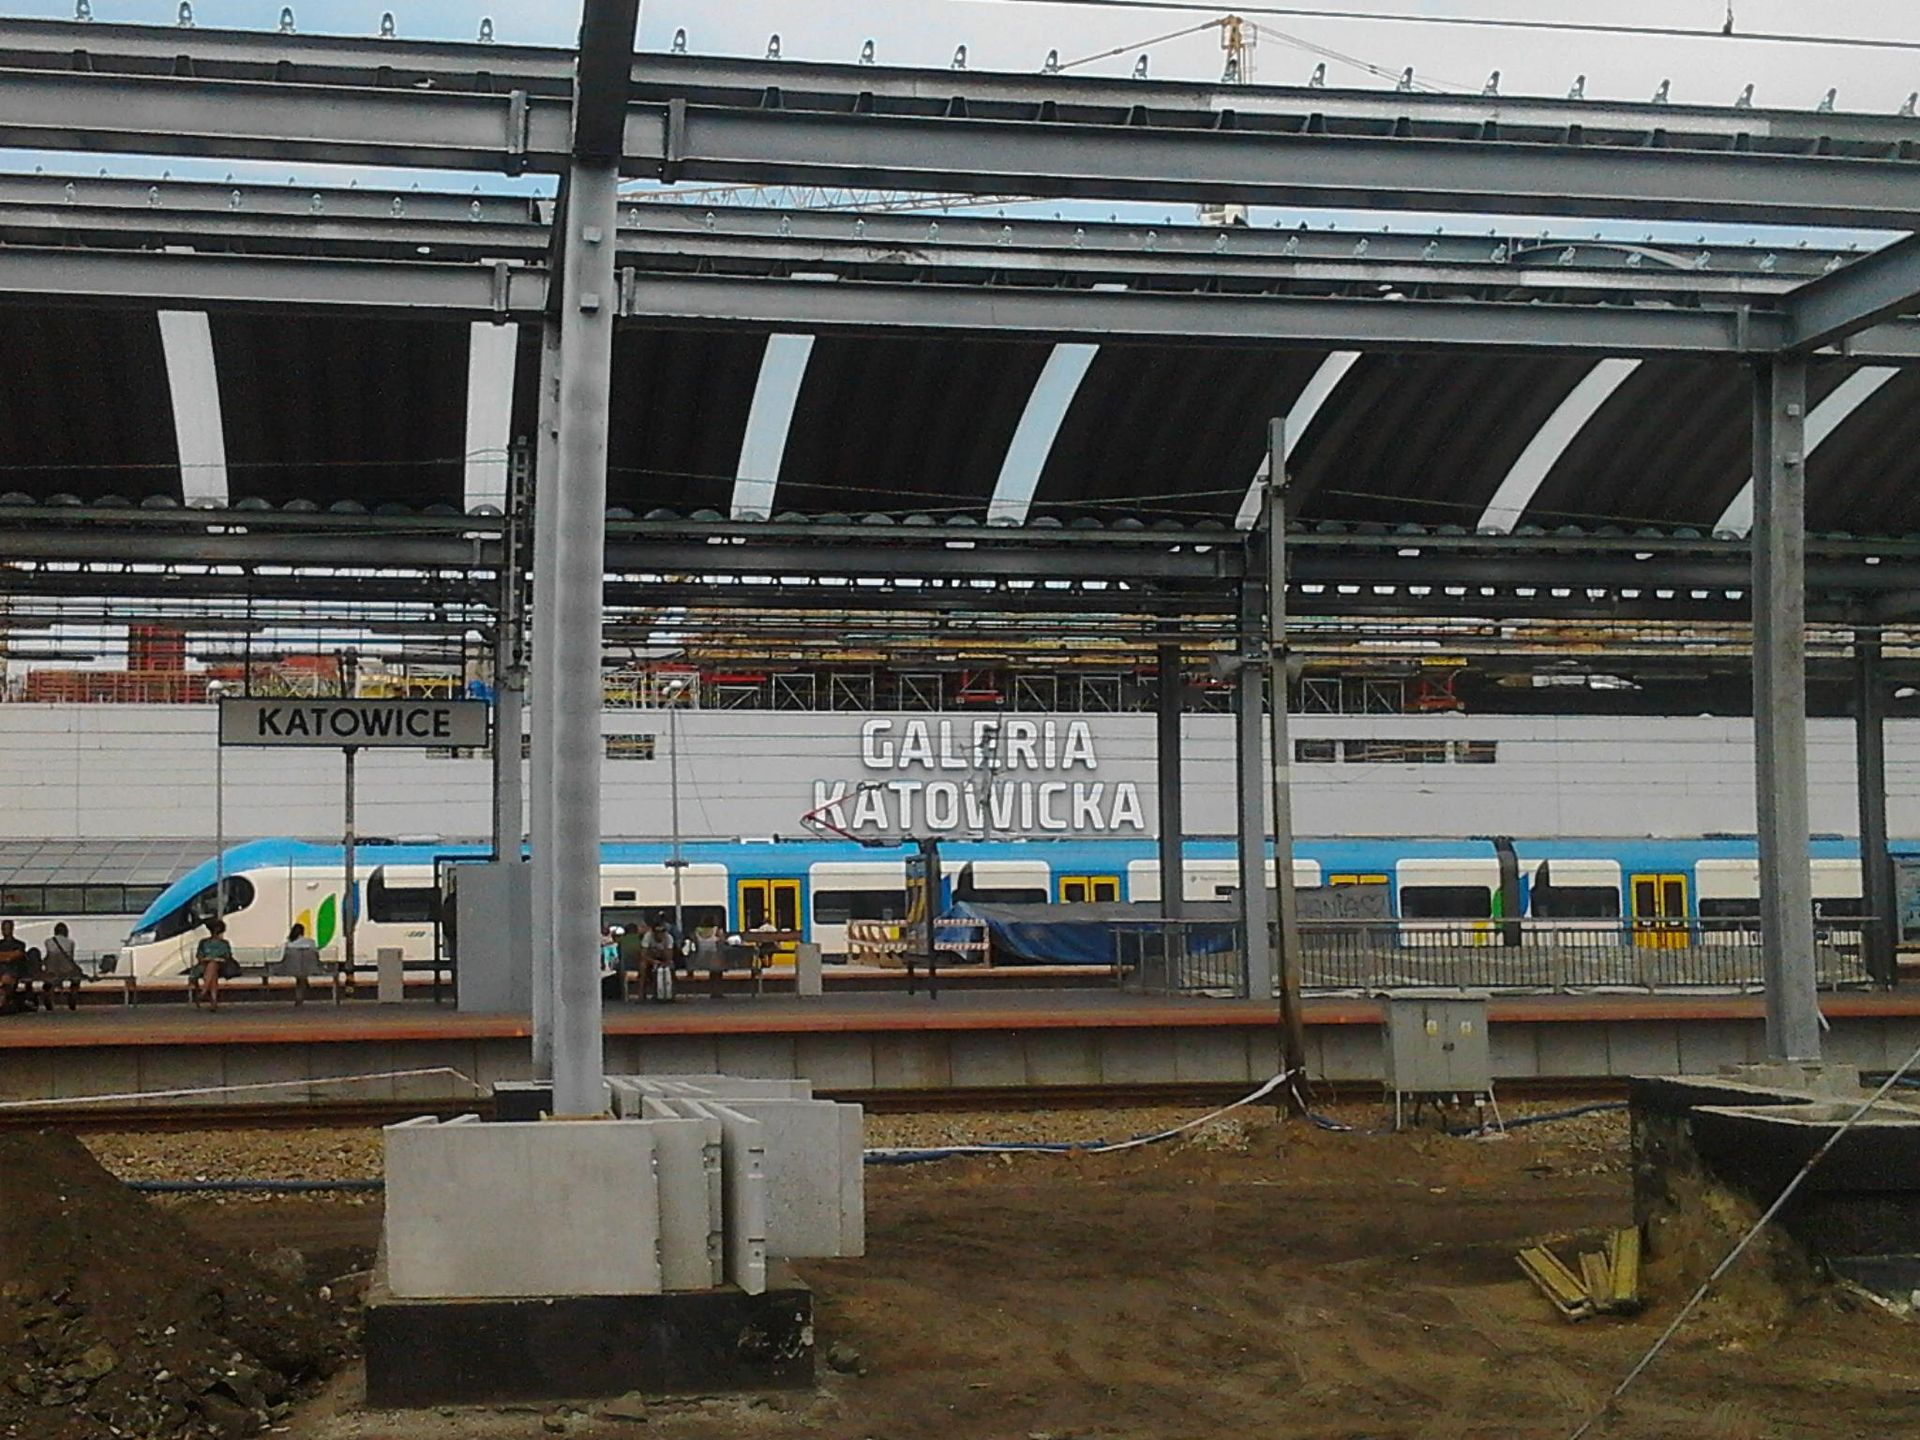  Nowe oblicze stacji Katowice - kolejny peron w budowie